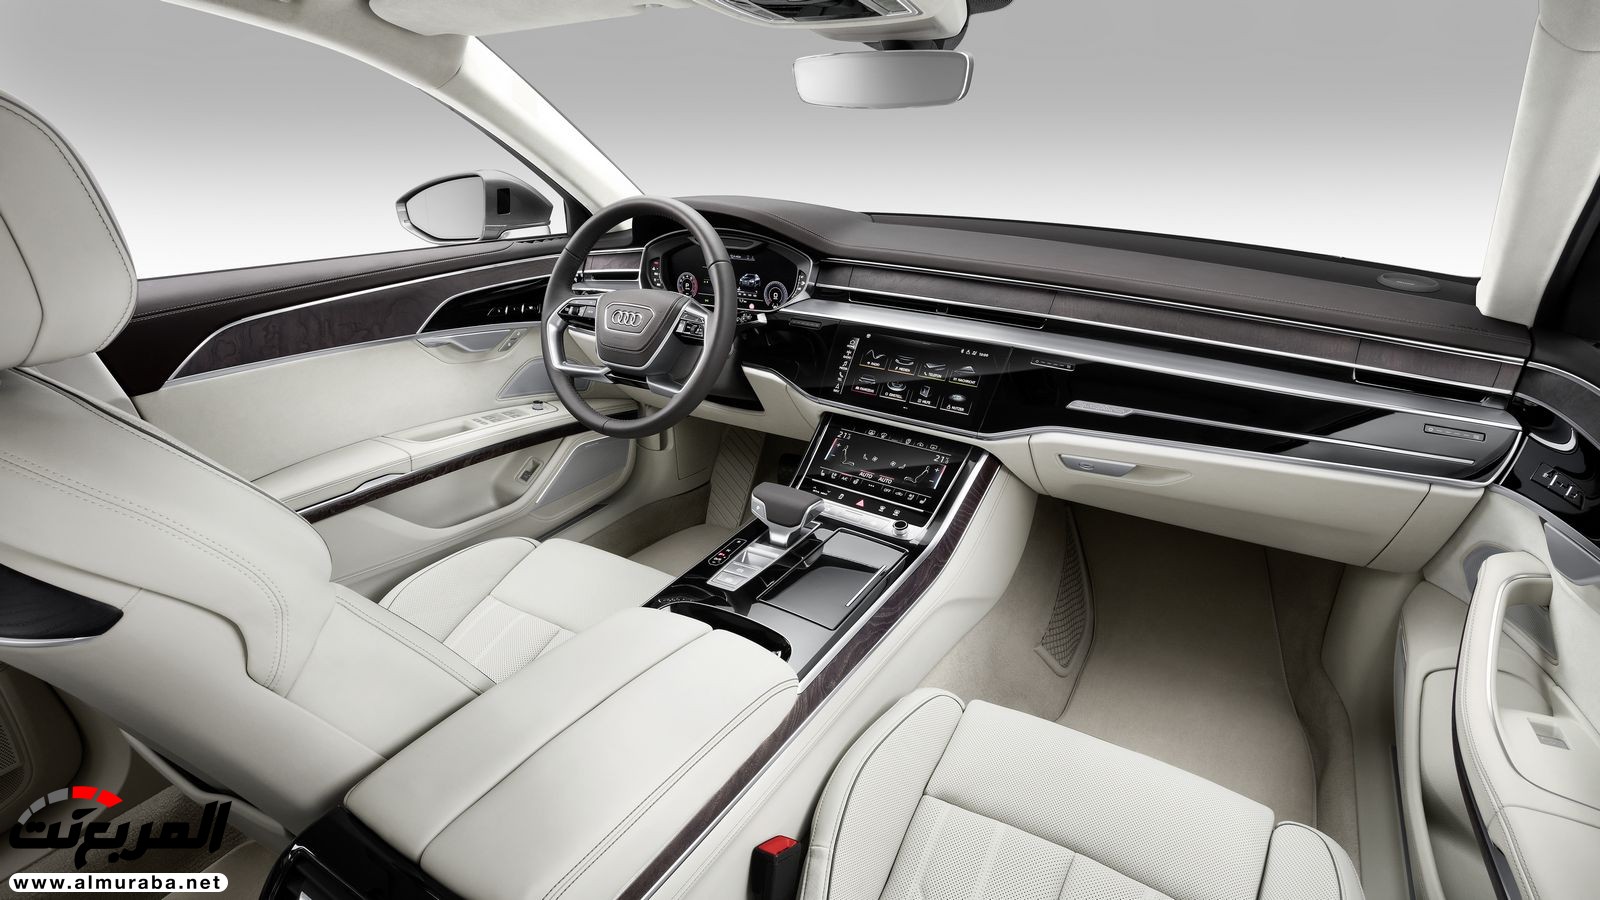 أودي A8 2018 الجديدة كلياً تكشف نفسها بتصميم وتقنيات متطورة "معلومات + 100 صورة" Audi A8 32